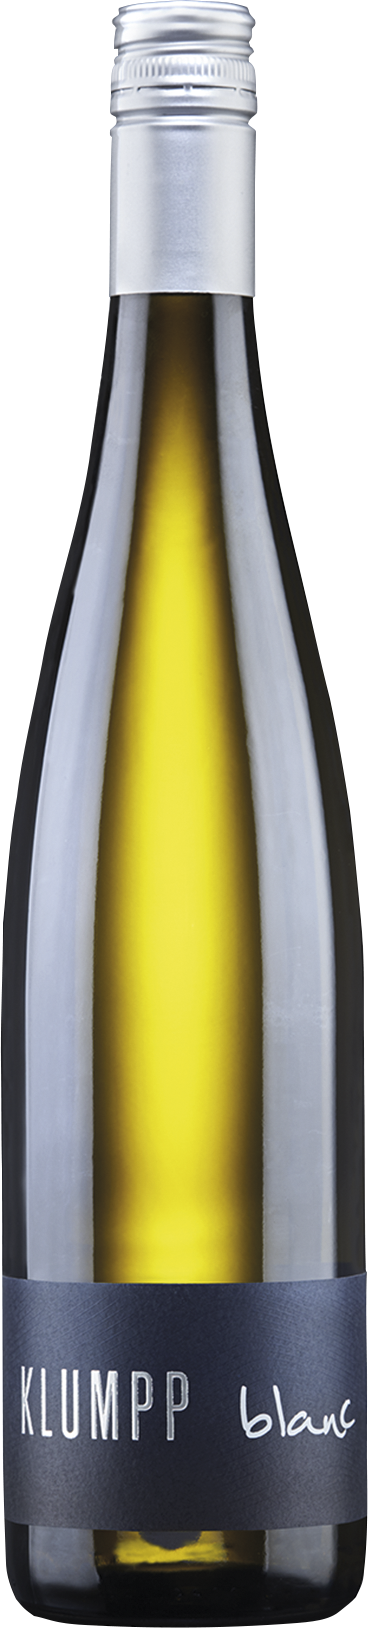 Cuvée Blanc Qualitätswein trocken